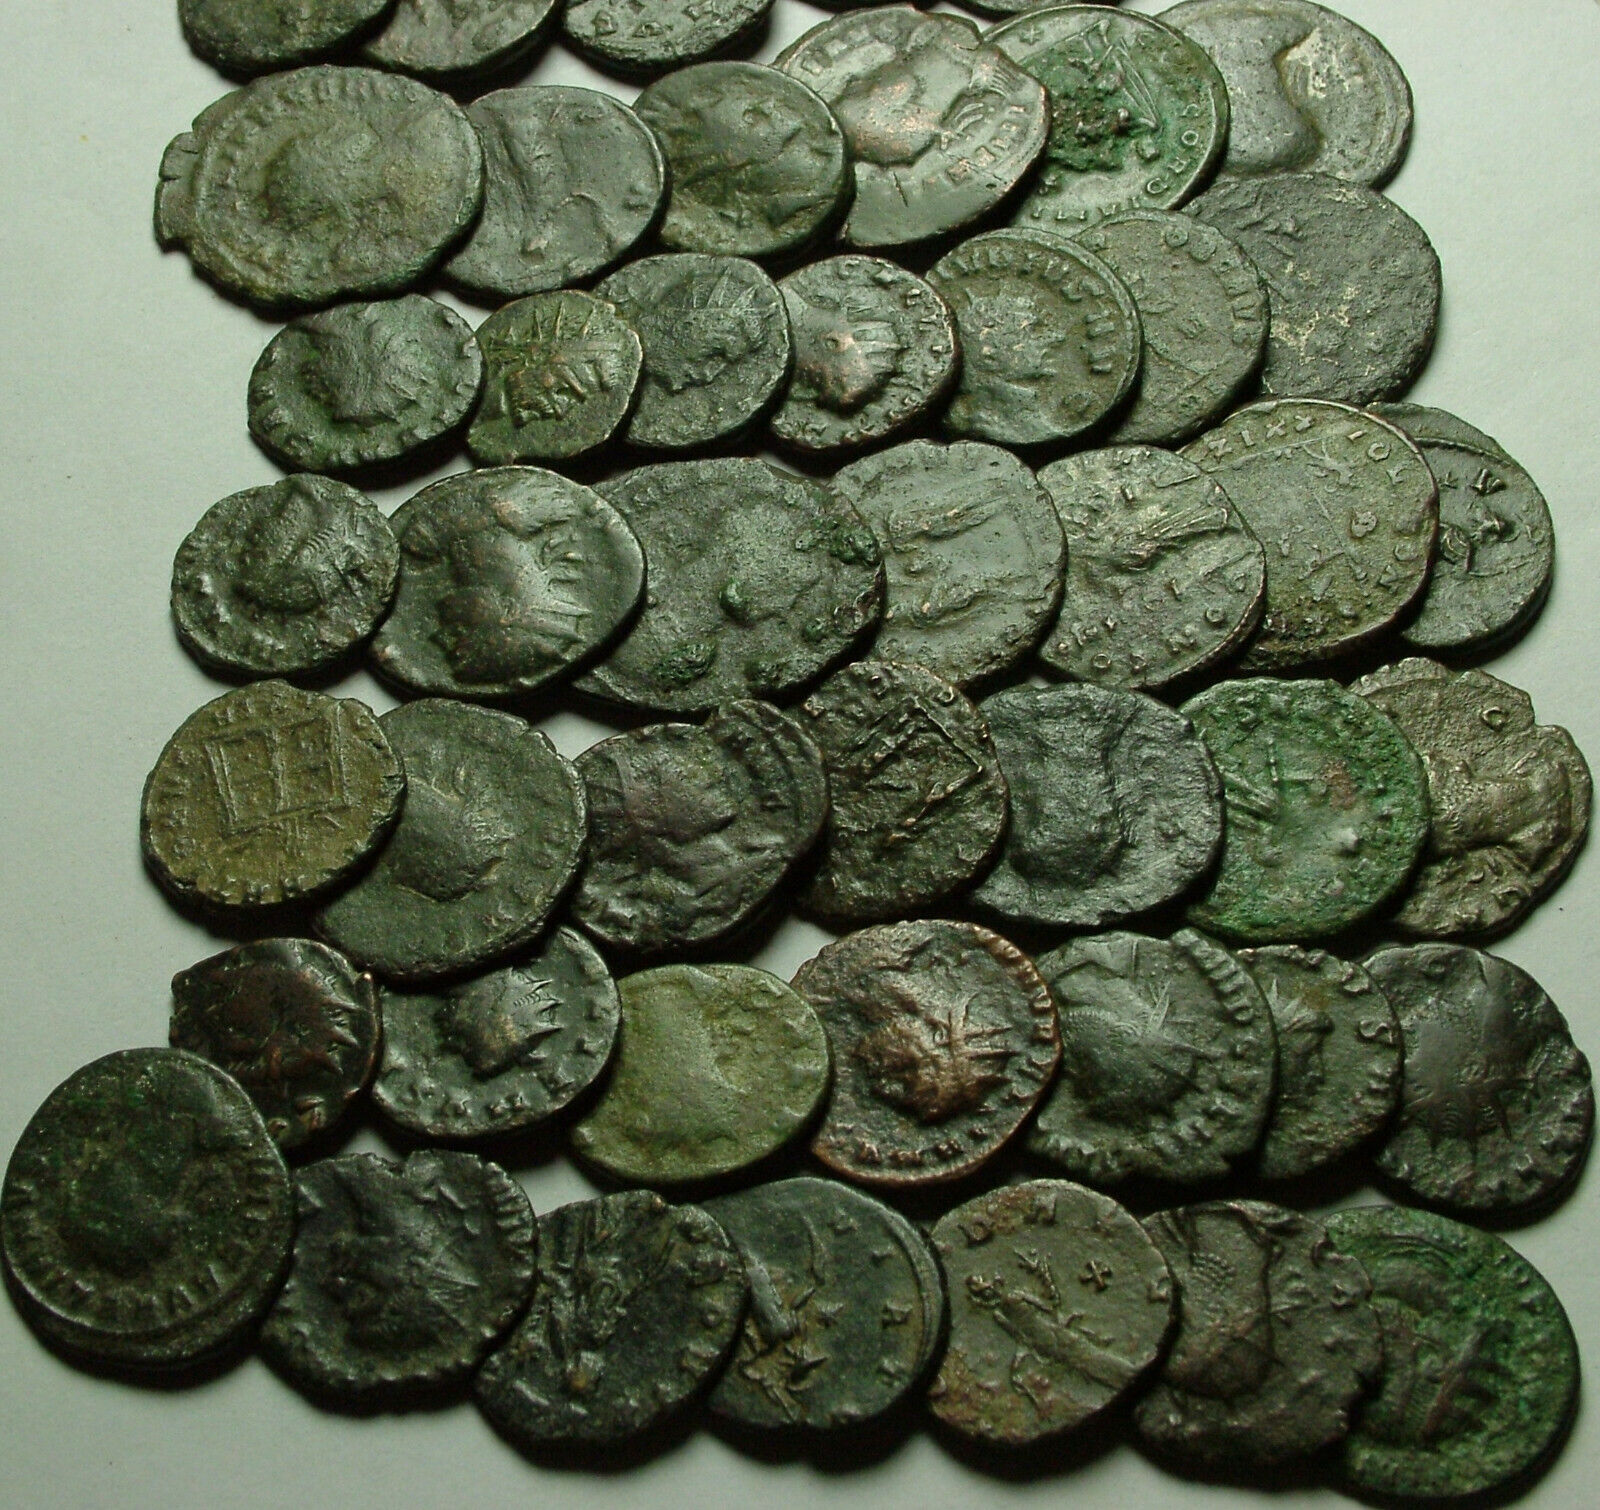 Lot of 3 Rare original Ancient Roman Antoninianus coins Probus Aurelian Claudius Без бренда